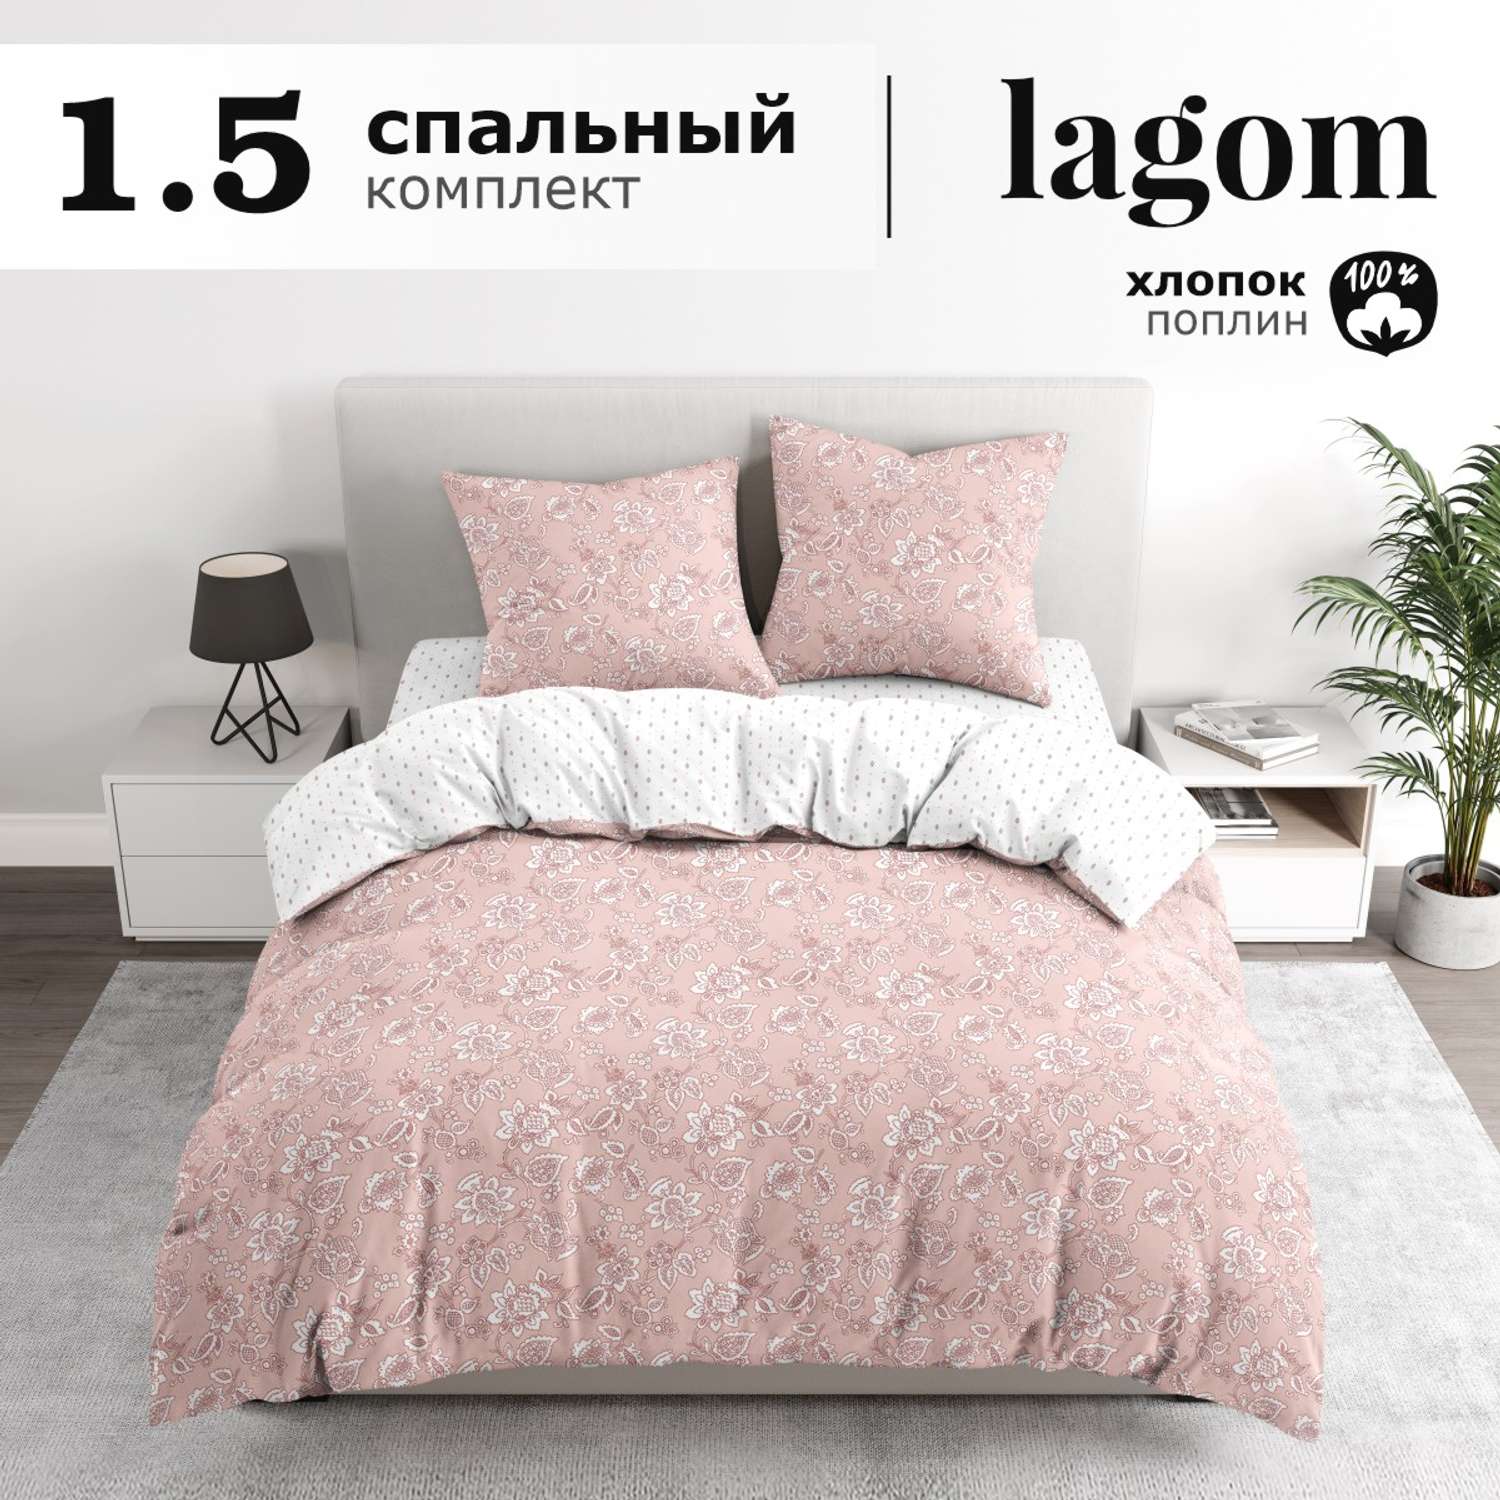 Комплект постельного белья lagom Лулео 1.5-спальный наволочки 70х70 рис.5977-1+5977а-1 - фото 1